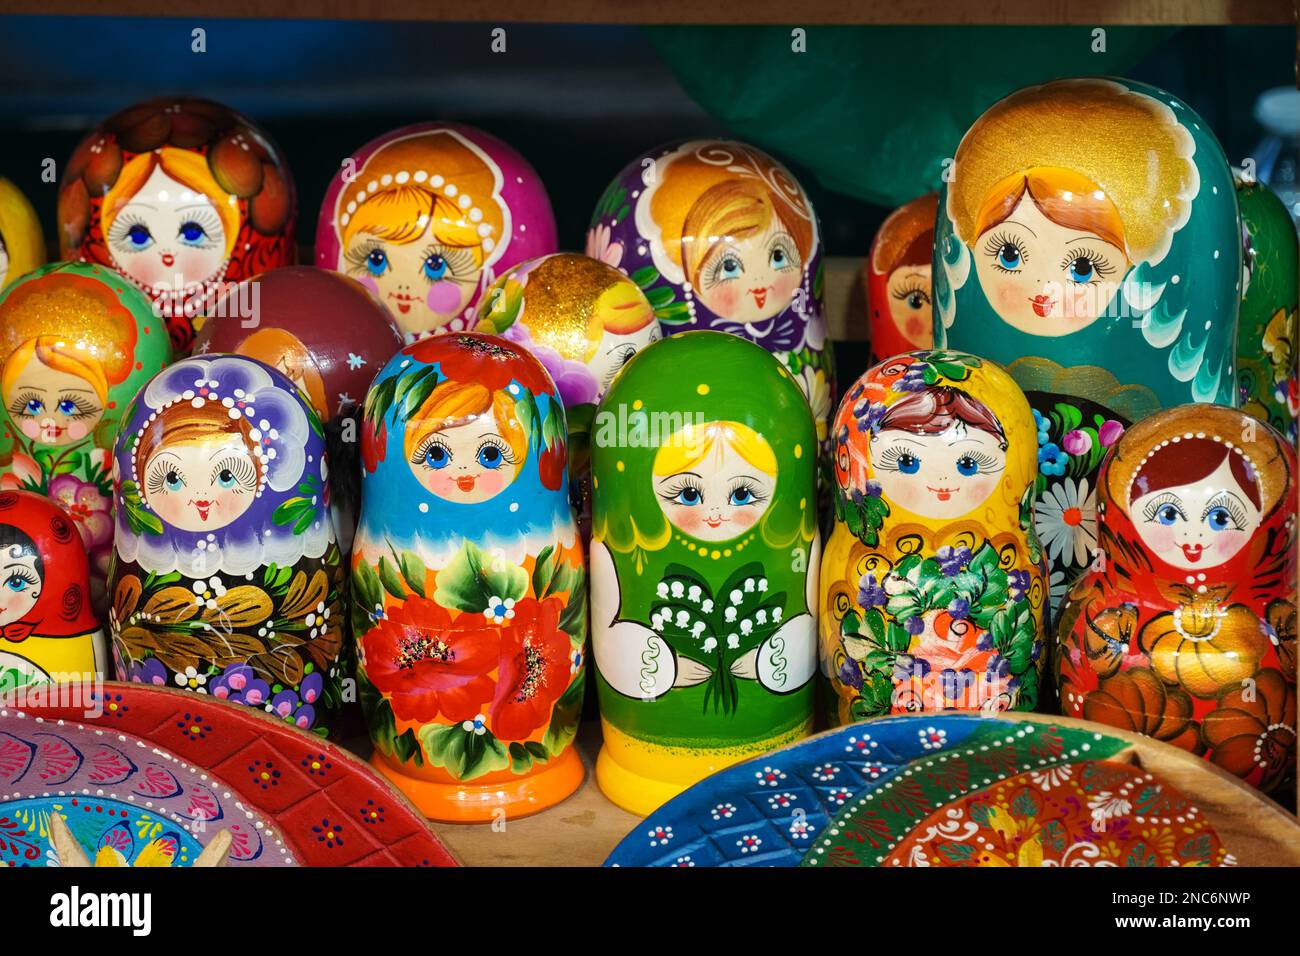 A display of Matryoshka dolls, babushka dolls Stock Photo